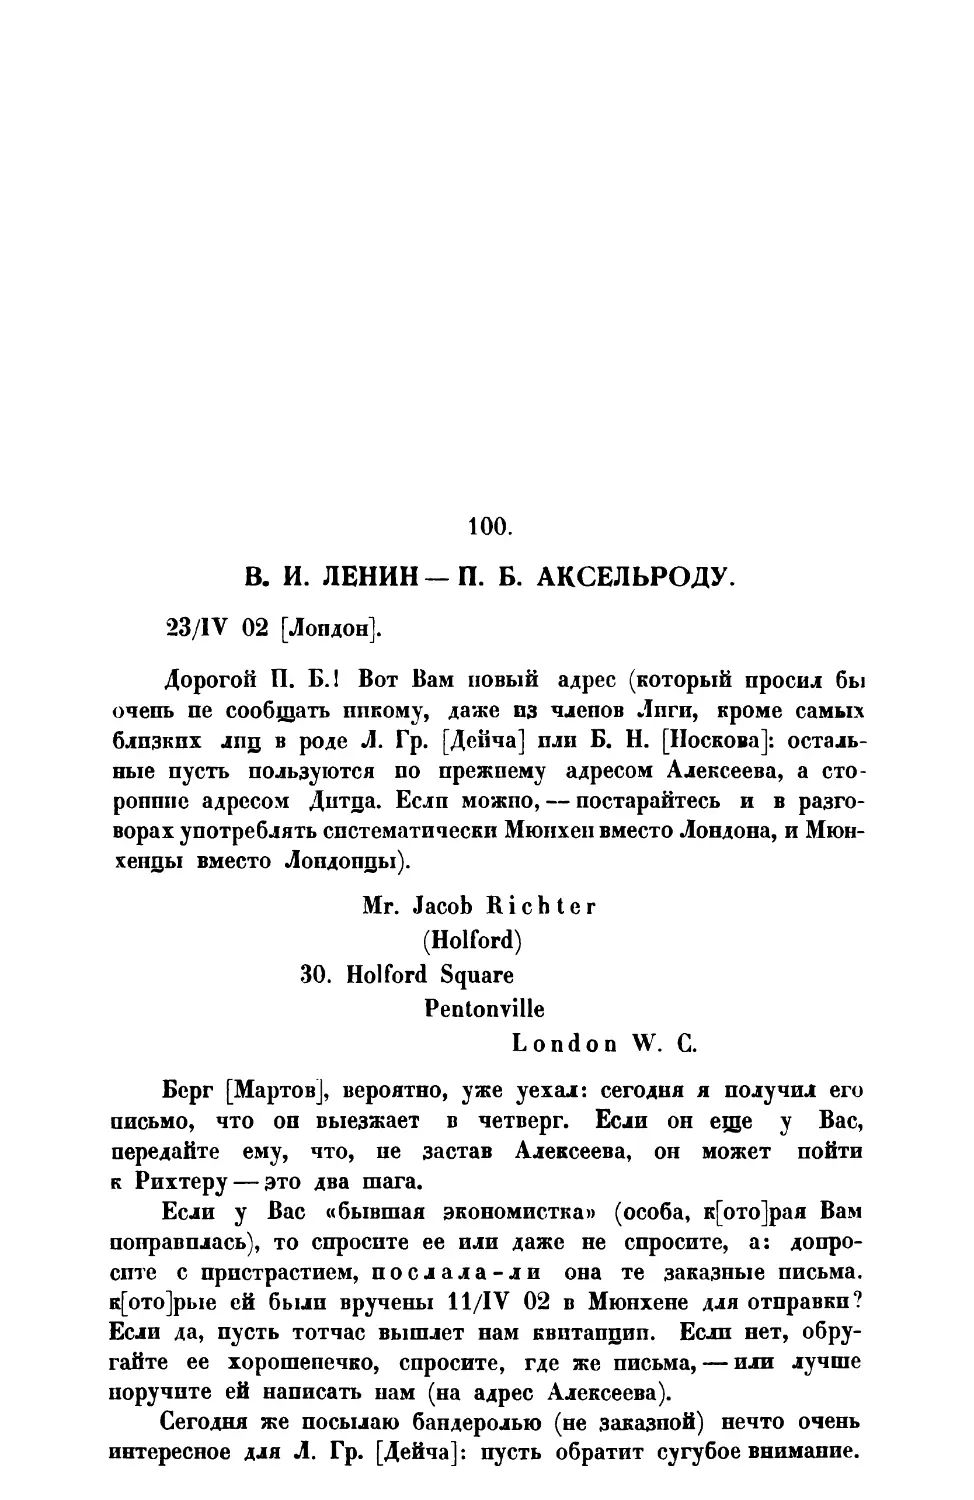 100. В. И. Ленин. — Письмо П. Б. Аксельроду от 23 IV 1902 г.